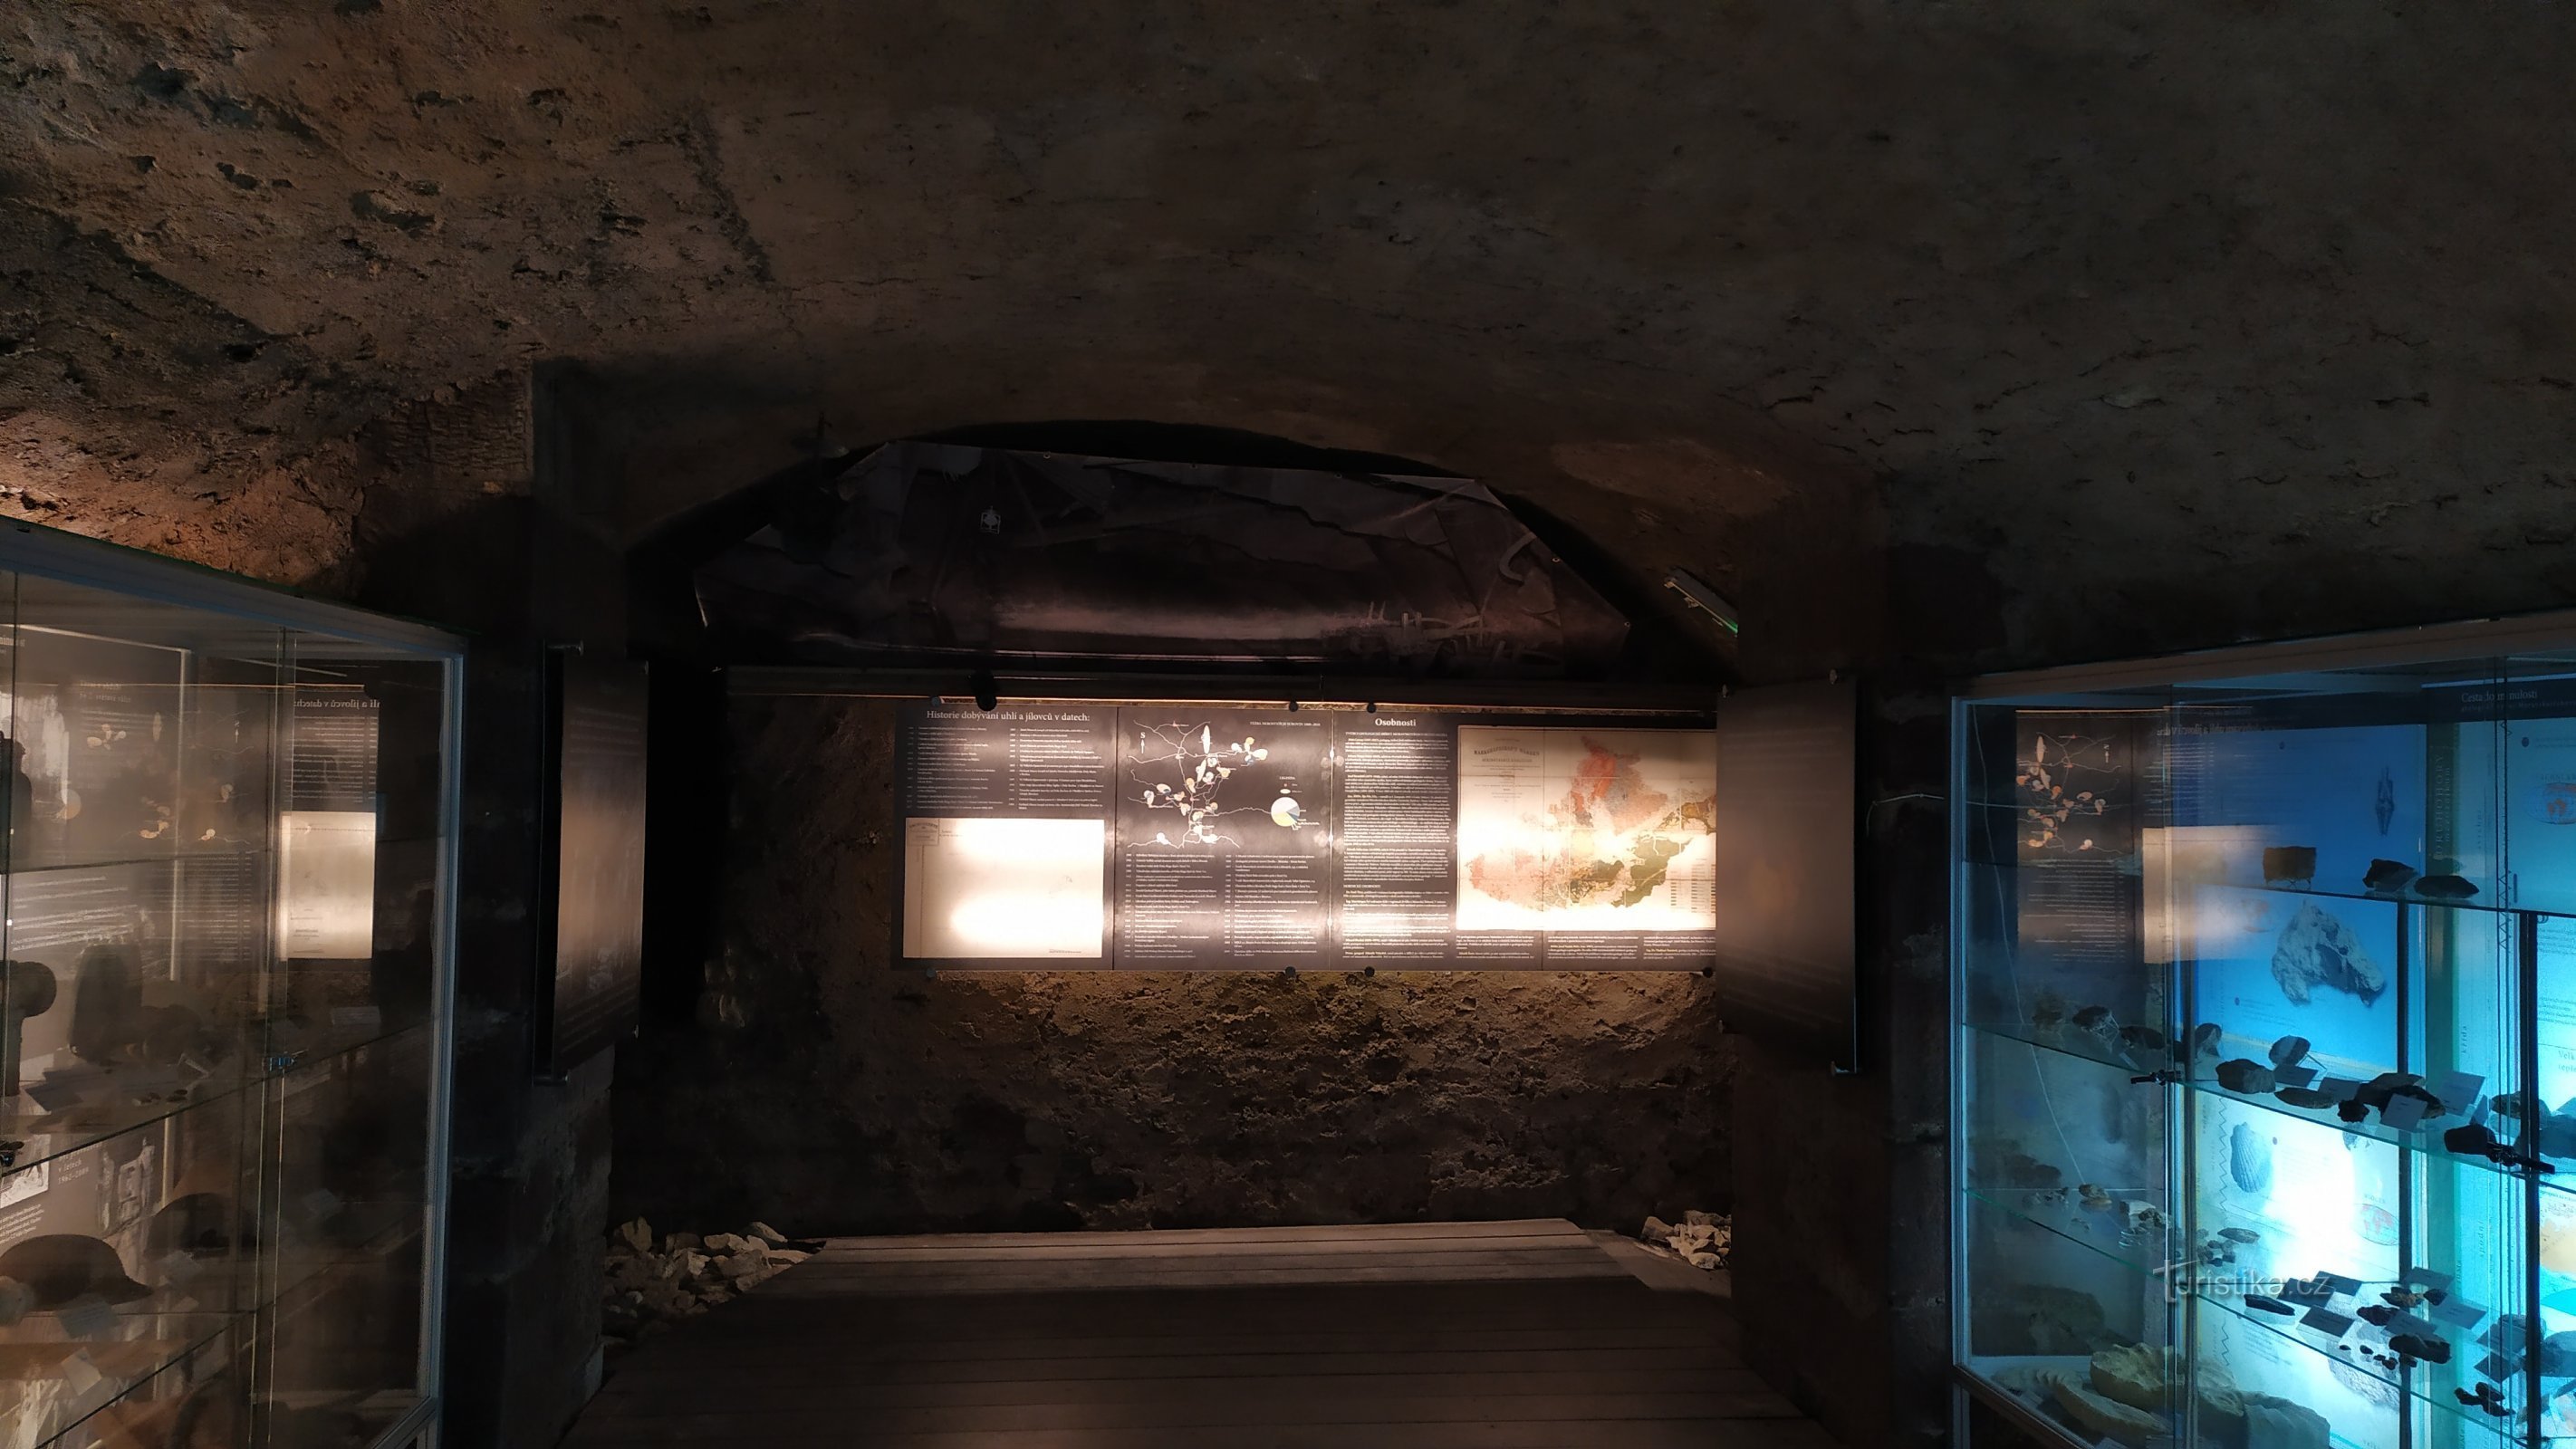 Експозиція розміщена в залишках підвалу старого замку